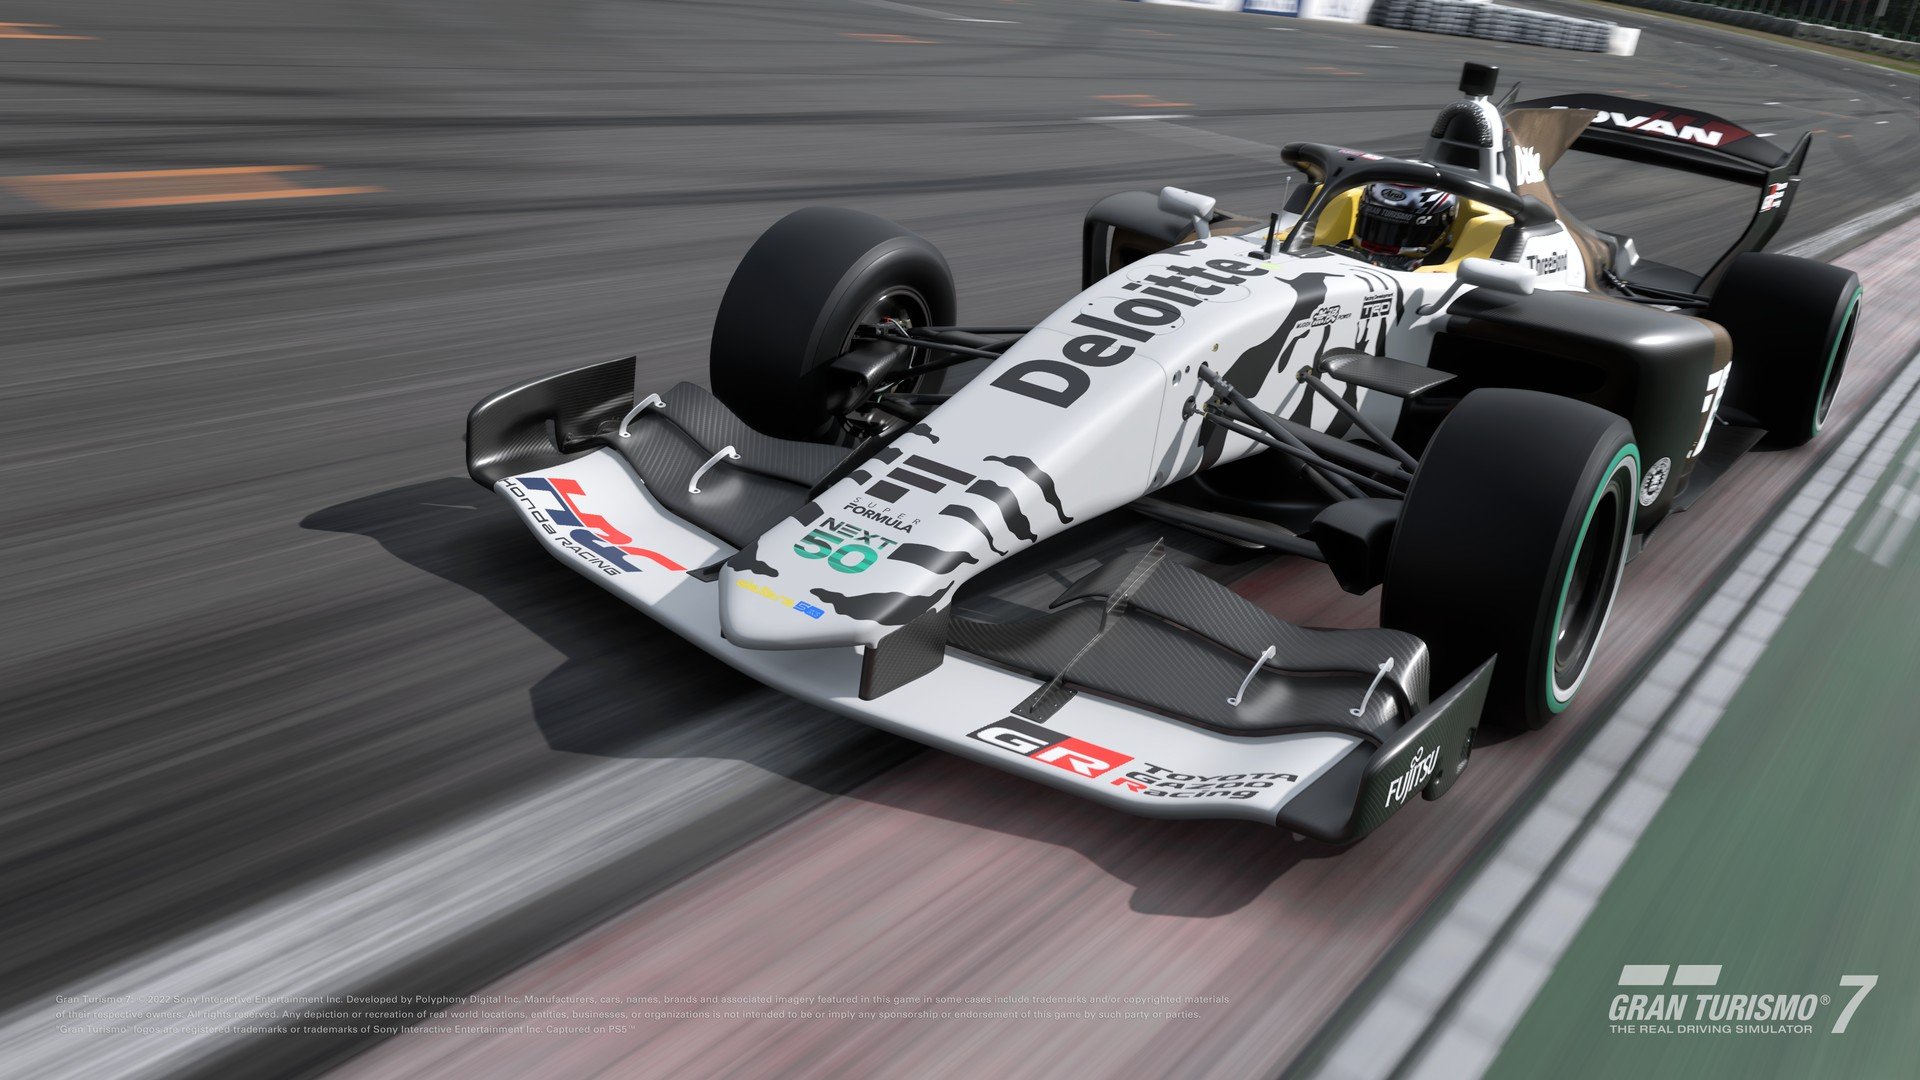 More information about "Aggiornamento di aprile di Gran Turismo 7: 4 nuove auto, tra cui la Super Formula 2023!"